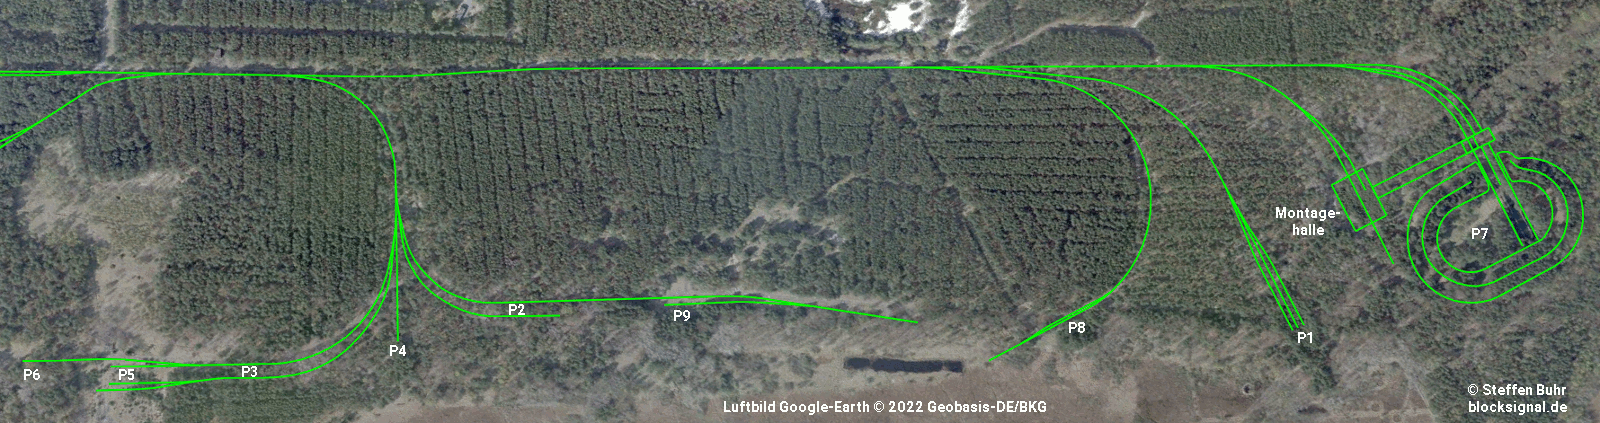 Gleisanlagen als grüne Linien im Luftbild 2009, das den an das Werk Ost anschließenden Bereich der Prüfstände aus 1800 m Höhe zeigt